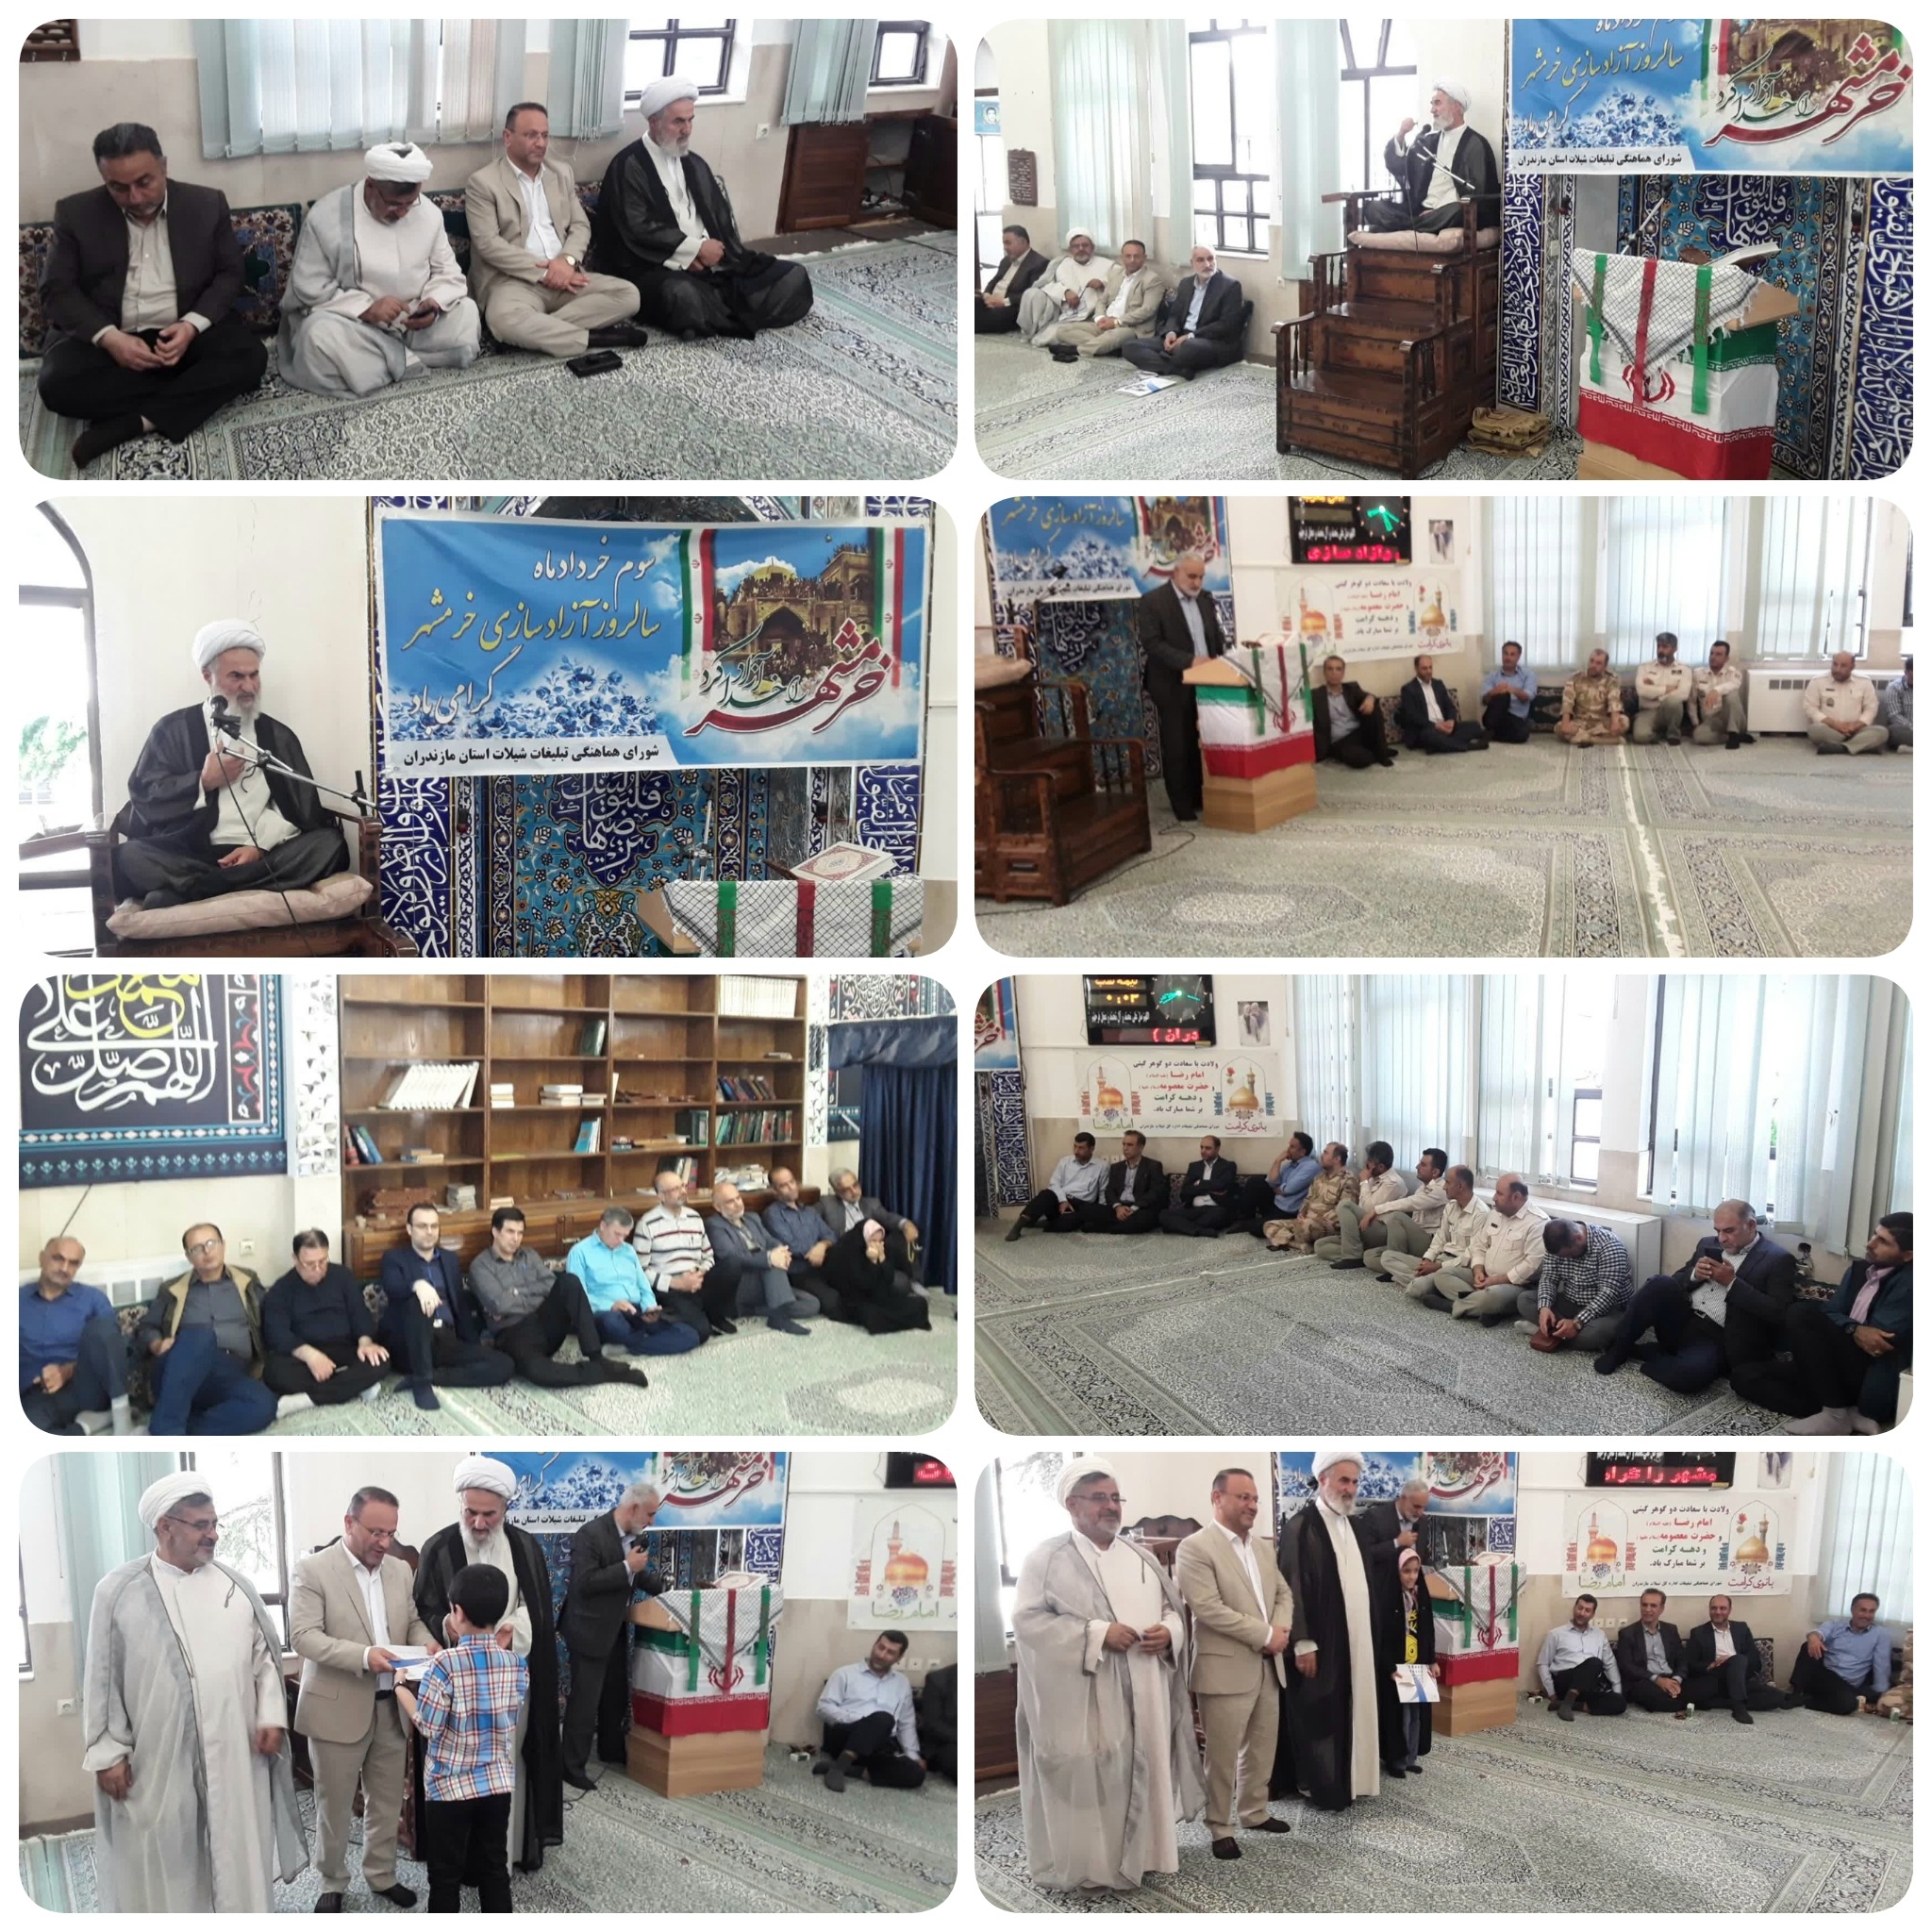 مراسم گرامیداشت سالروز آزادسازی خرمشهر با حضور مسئولان شیلات مازندران در این اداره کل برگزار شد.